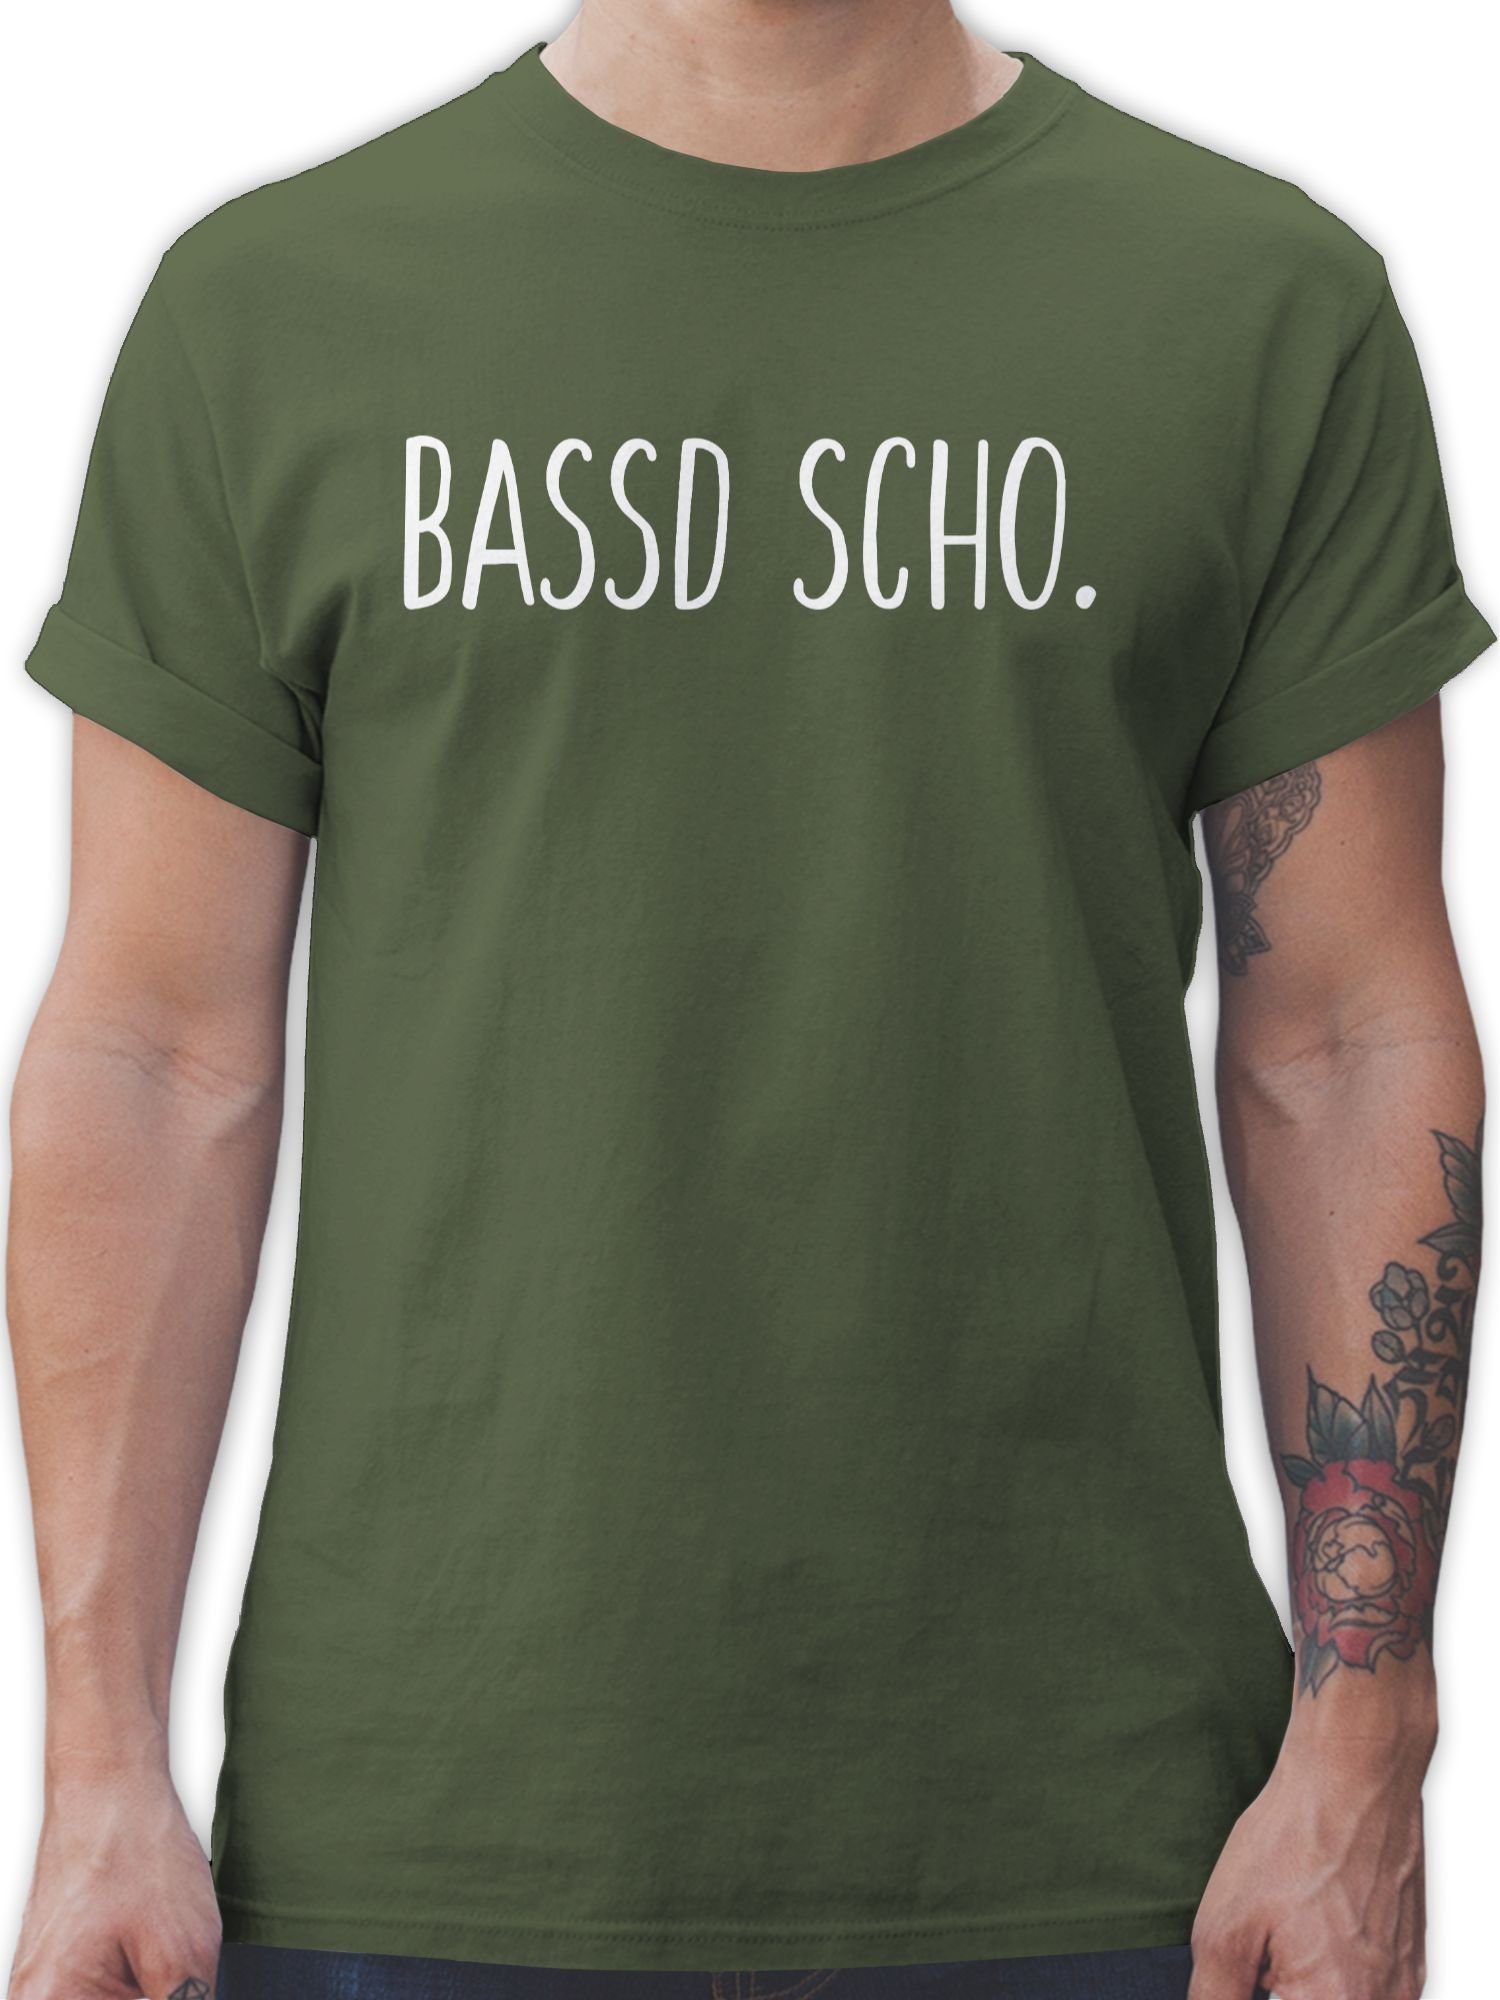 Shirtracer T-Shirt Bassd scho Sprüche Statement 2 Army Grün